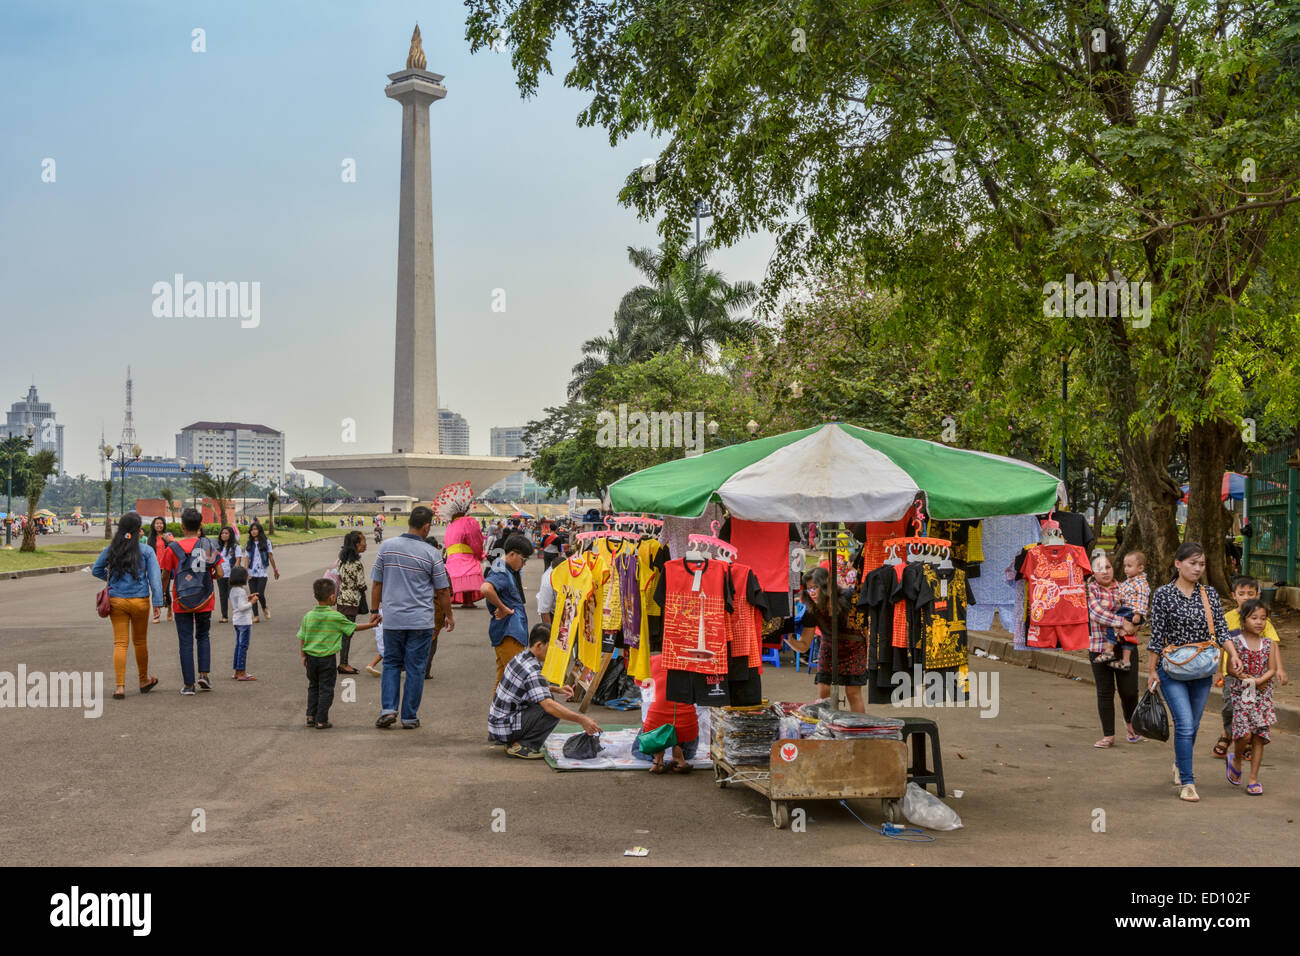 Jakarta Juli 31, 2014. Persone che visitano Monas durante il Idul Fitri (Eid al-Fitr) Vacanze. Foto Stock